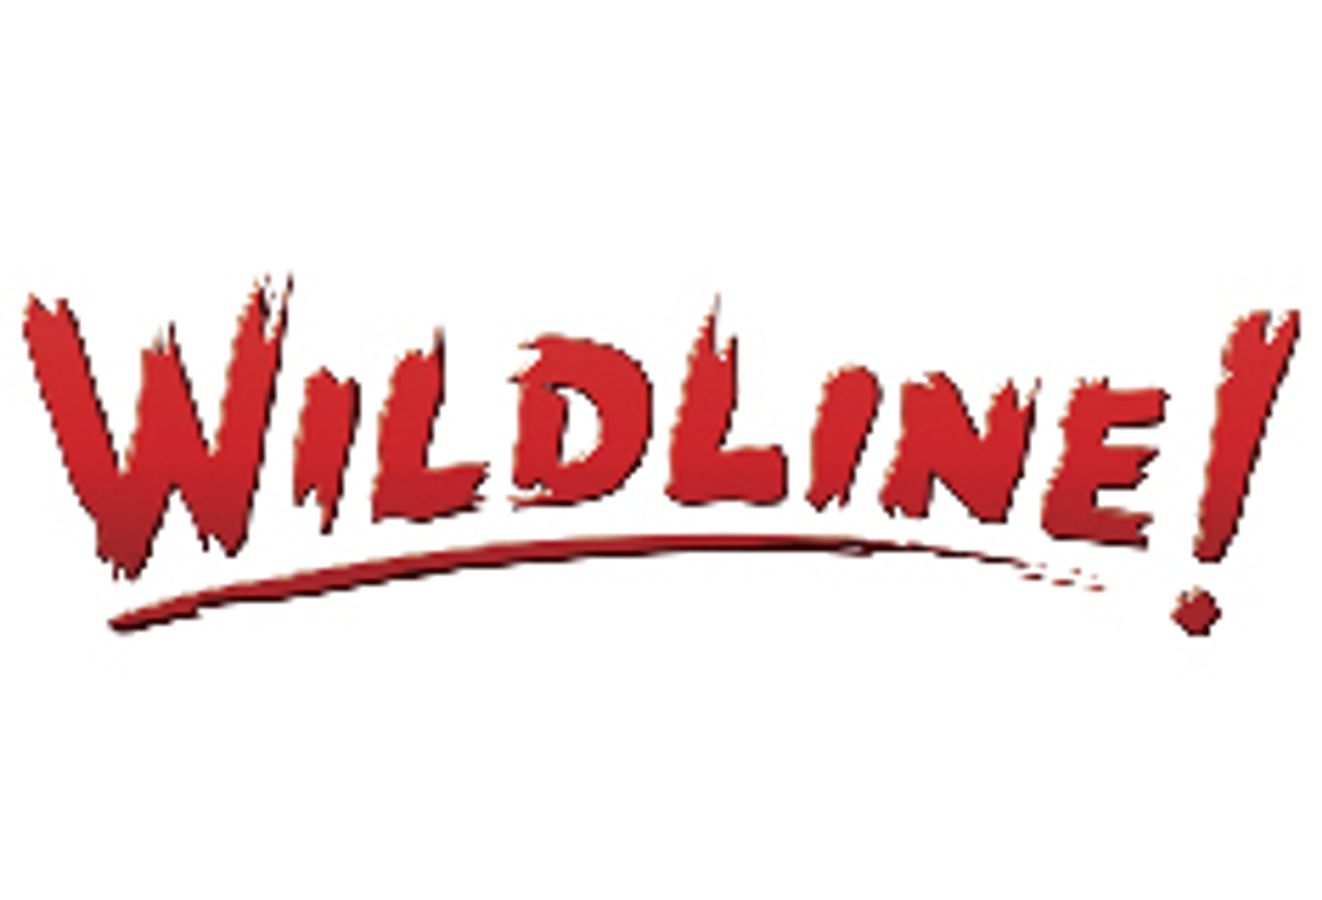 Wildline!